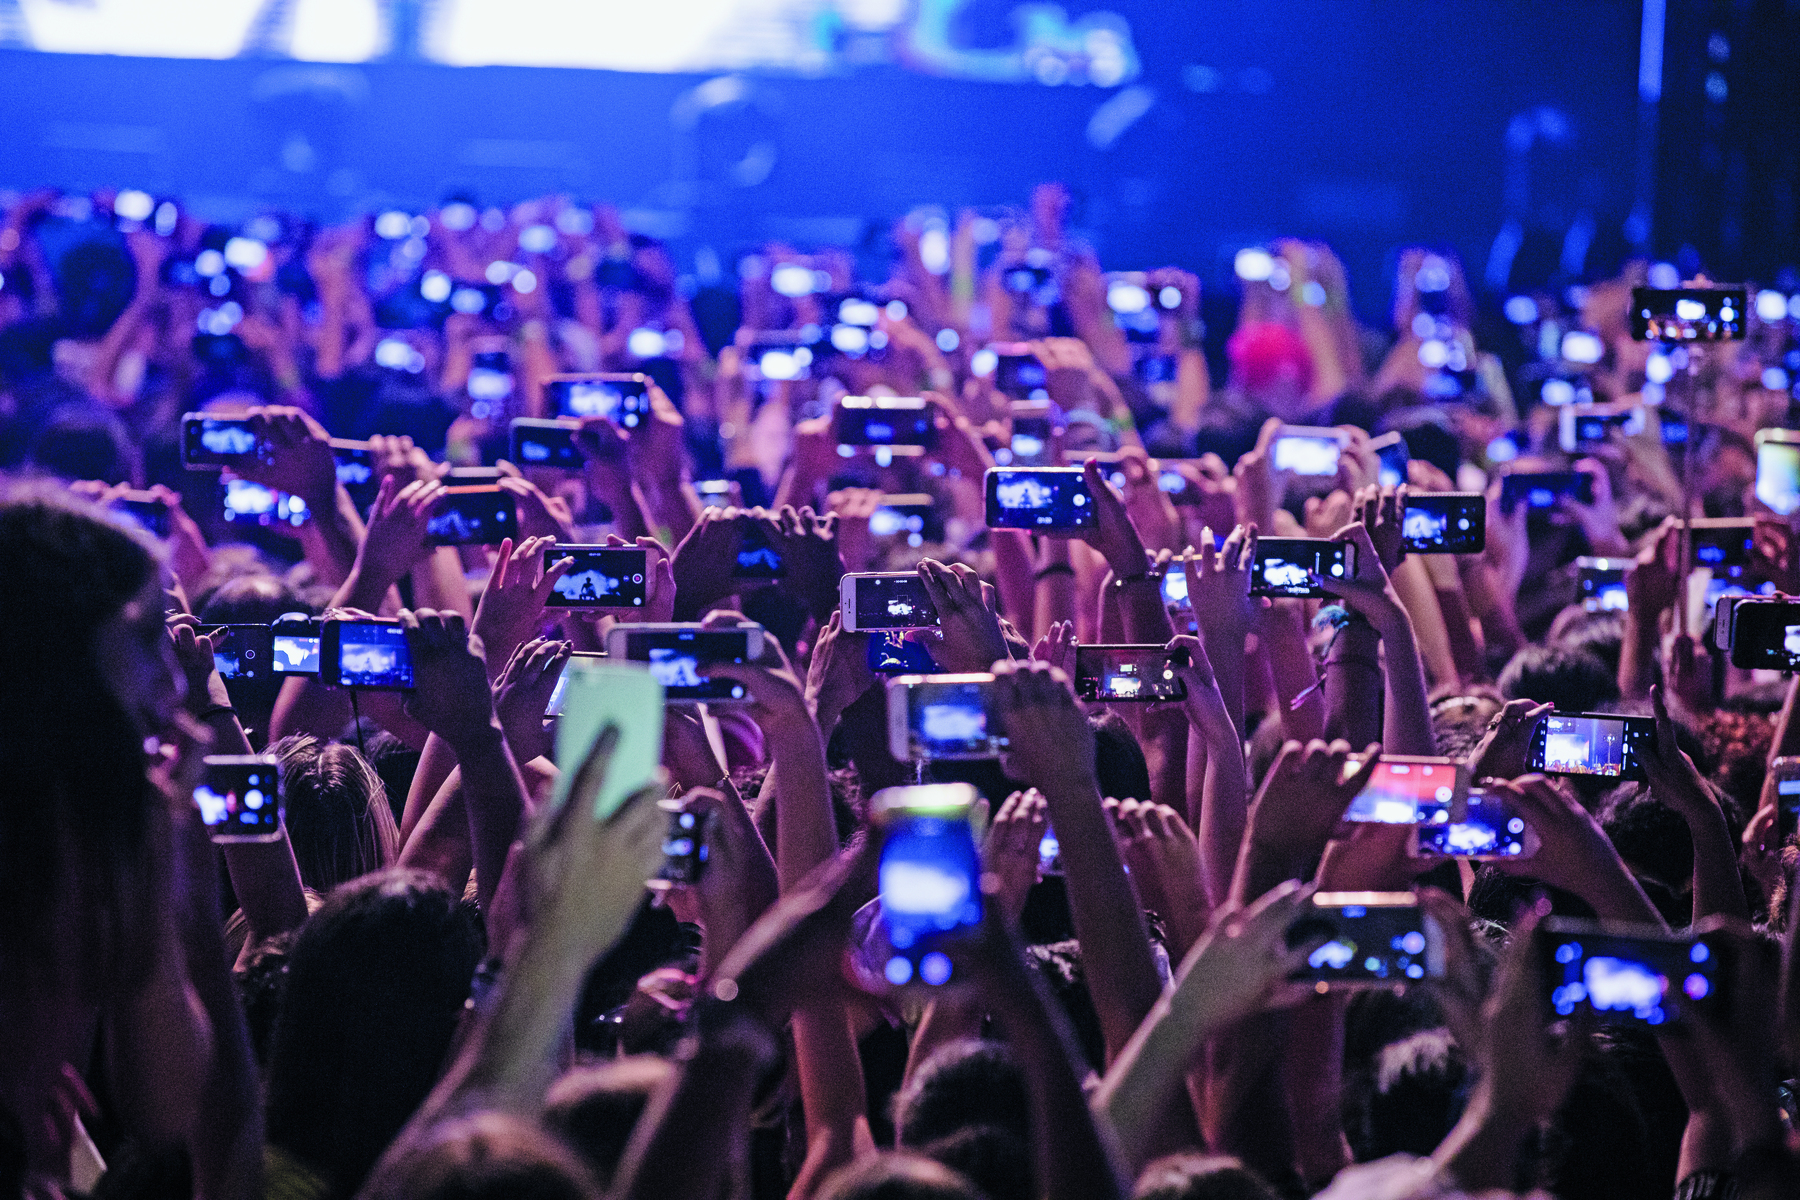 Fotografia. Vista de multidão. Sob uma luz azulada, as pessoas, vistas de costas, estão com as mãos para cima segurando celulares com as câmeras ligadas.